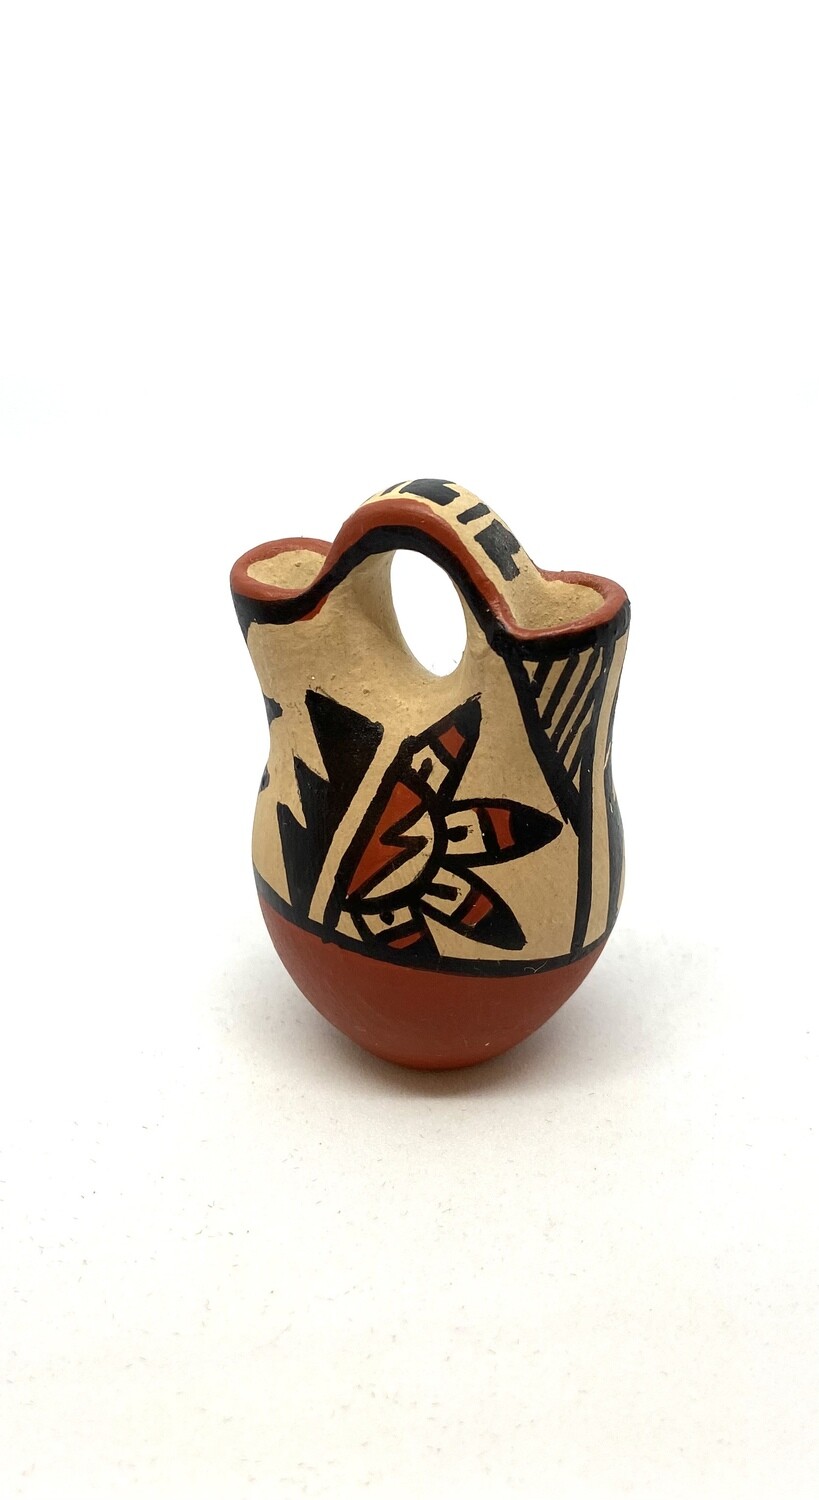 Hand-painted Mini Wedding Vase 2”